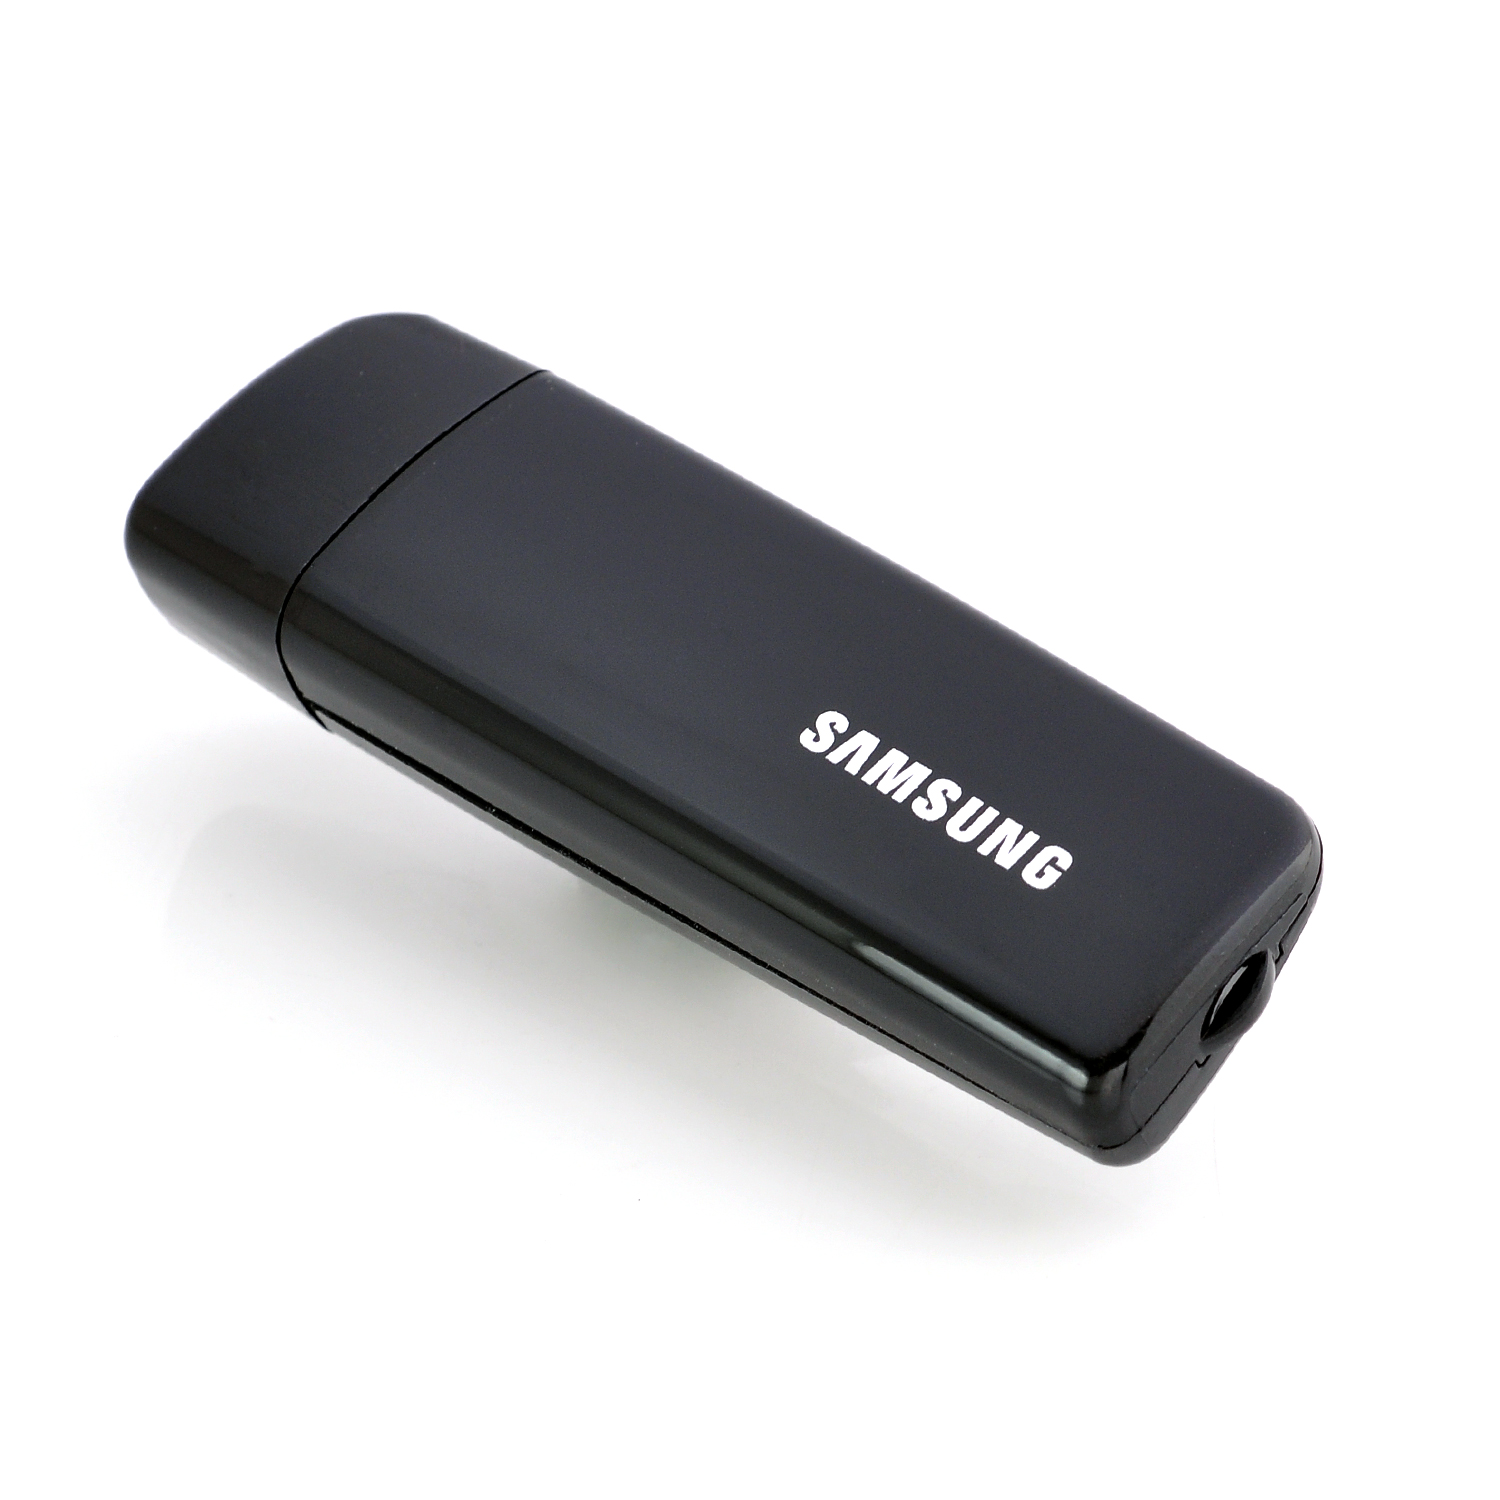 Samsung Wireless Lan Adapter Software